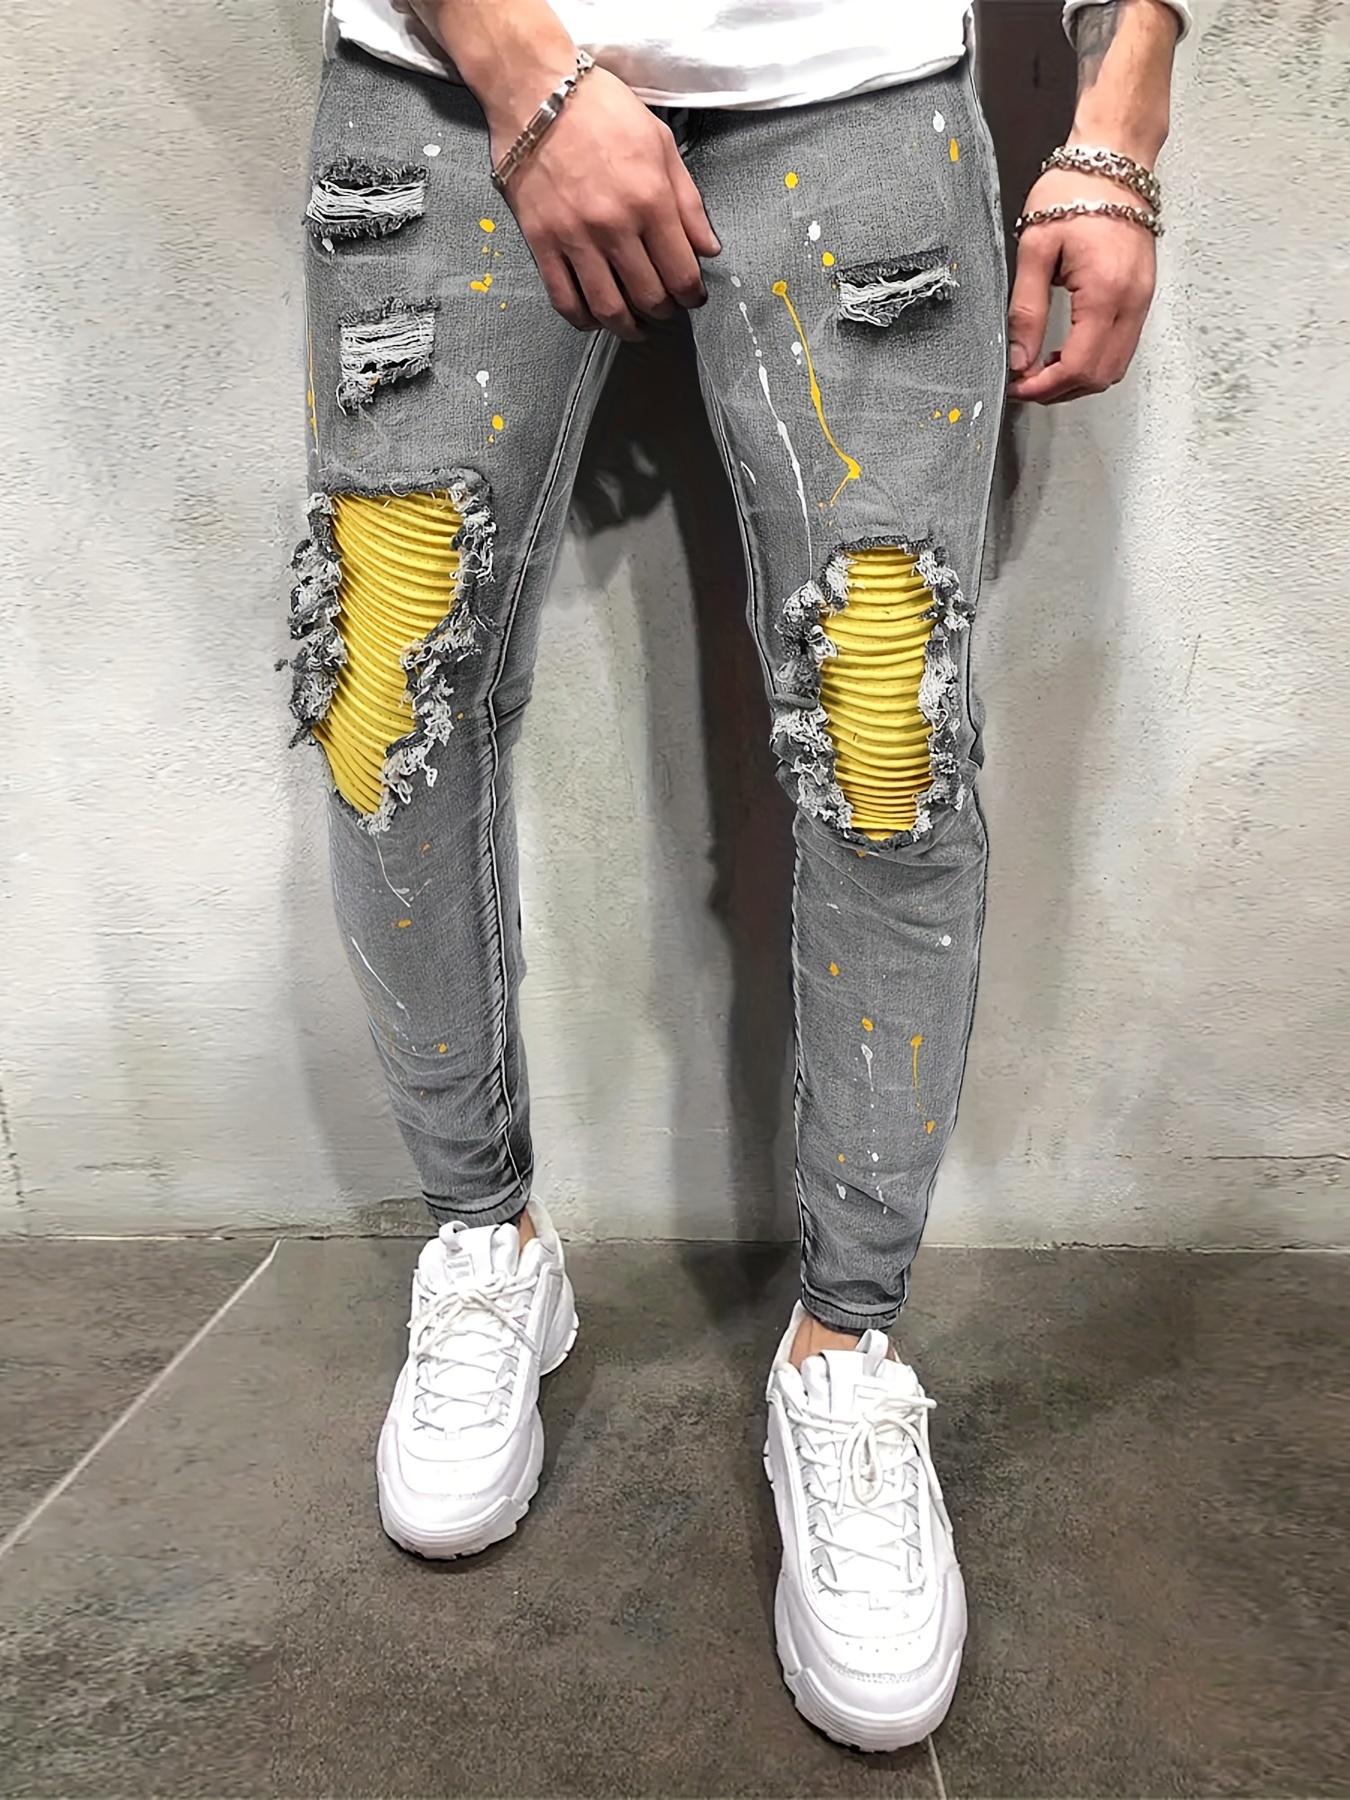 Paint Splatter Ripped Knee Black Skinny Jeans